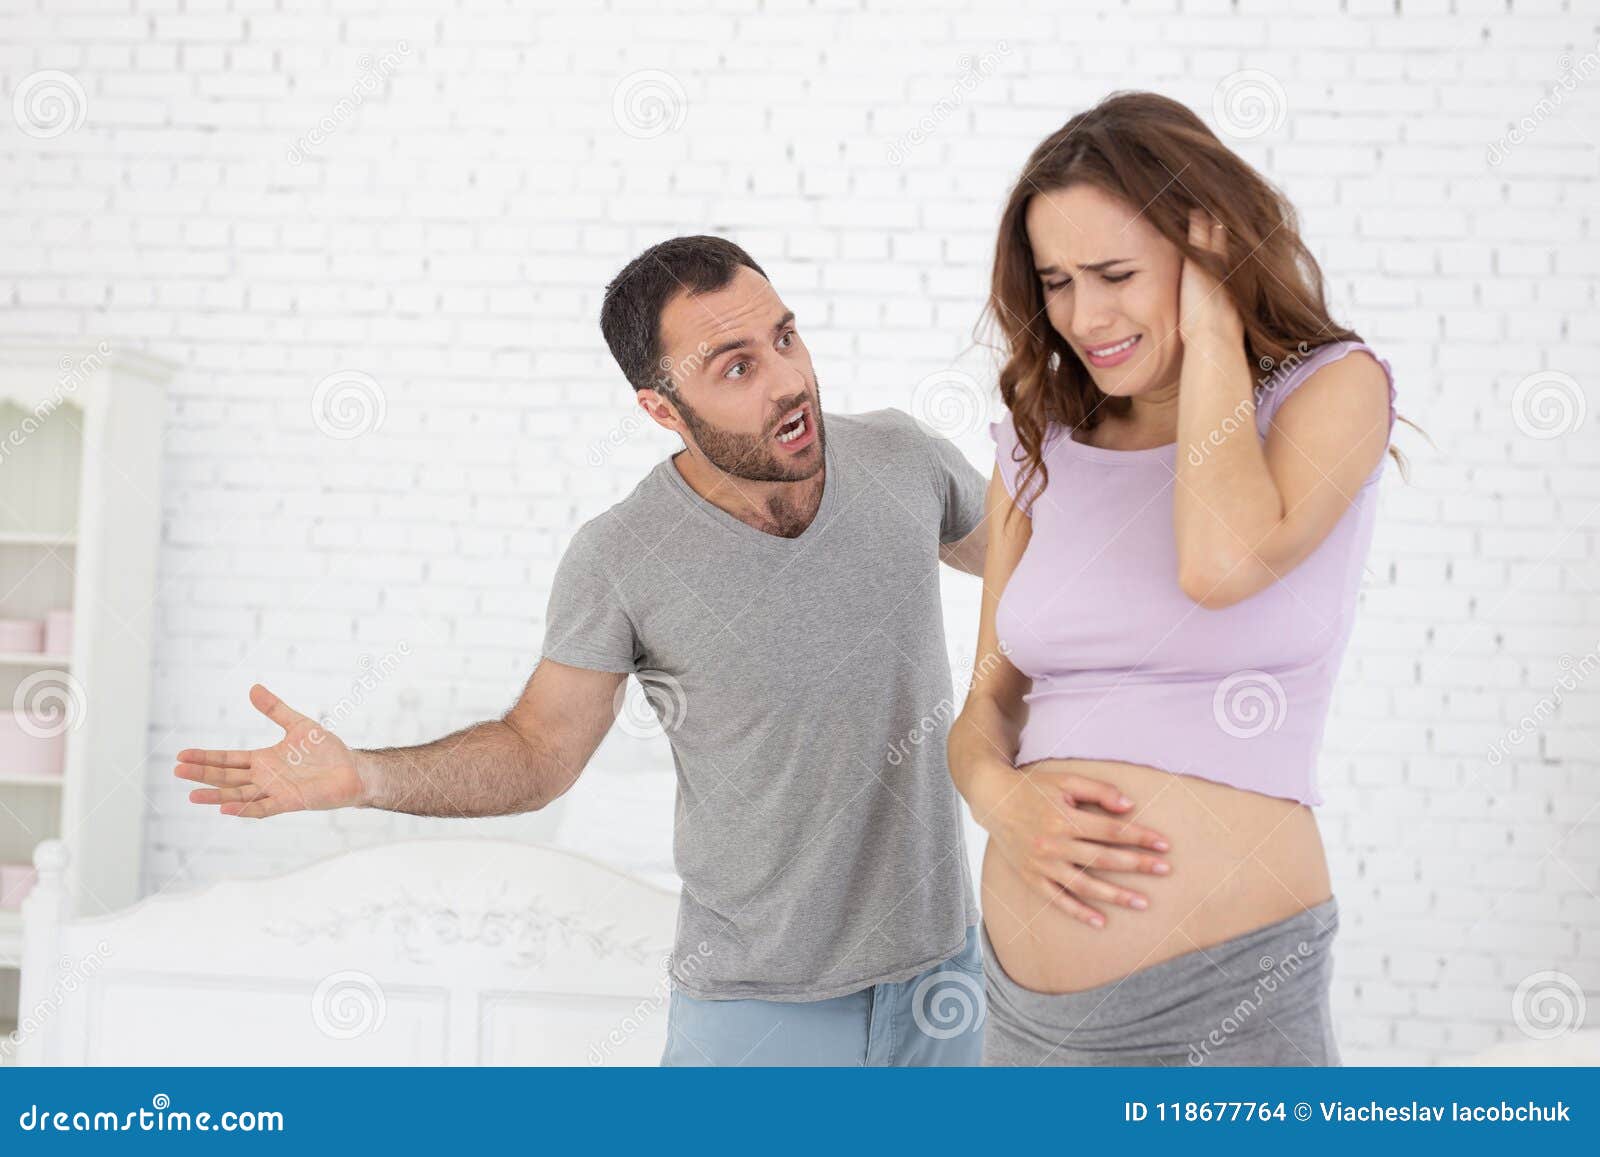 Русская просит забеременеть. Кричит на беременную.